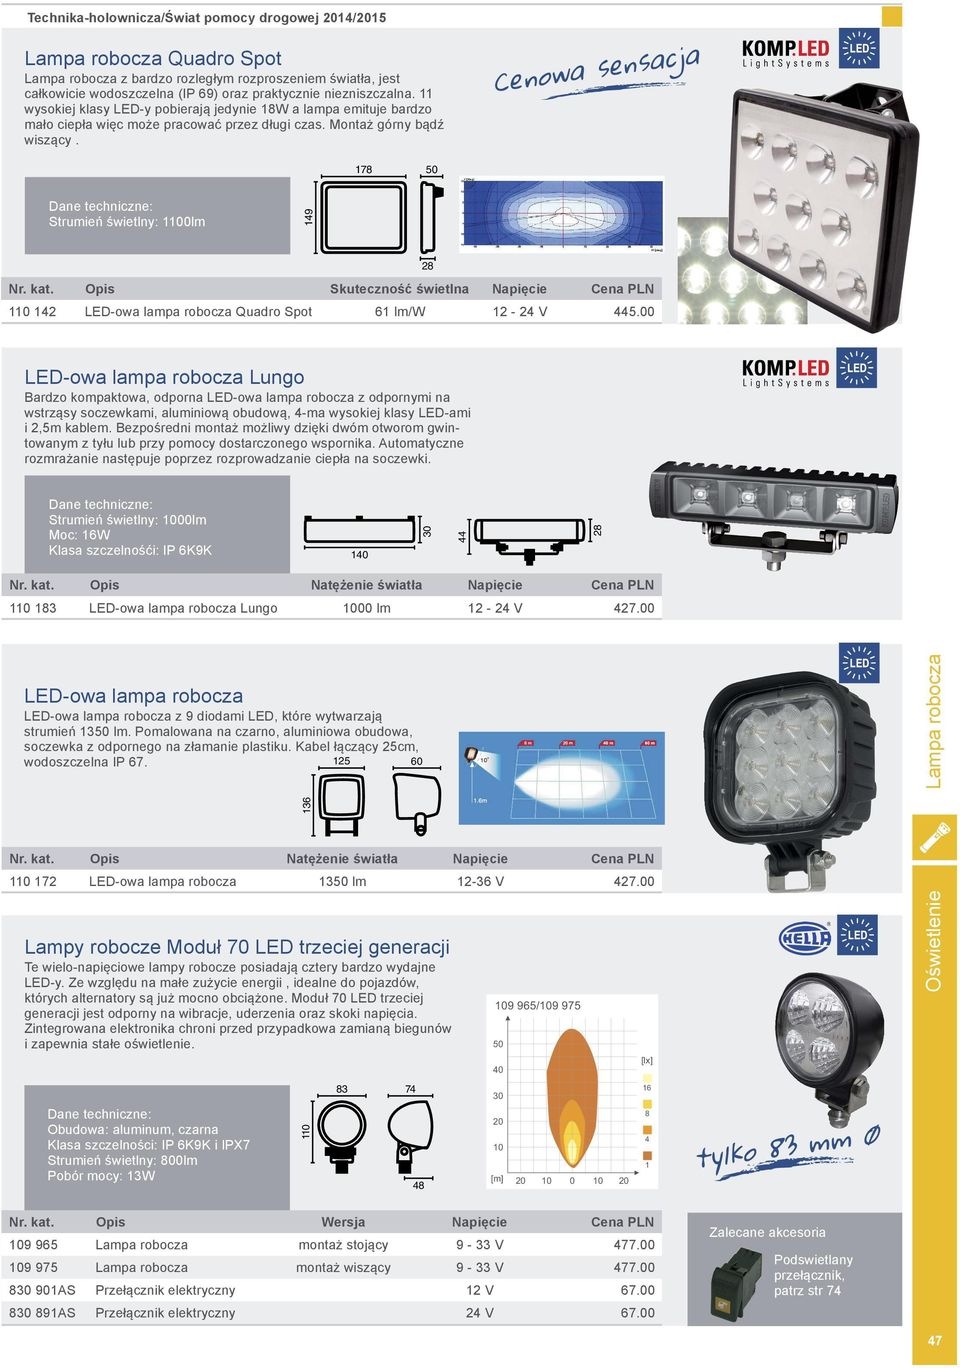 Opis Skuteczność świetlna Napięcie Cena PLN LED-owa lampa robocza Quadro Spot lm/w - V.